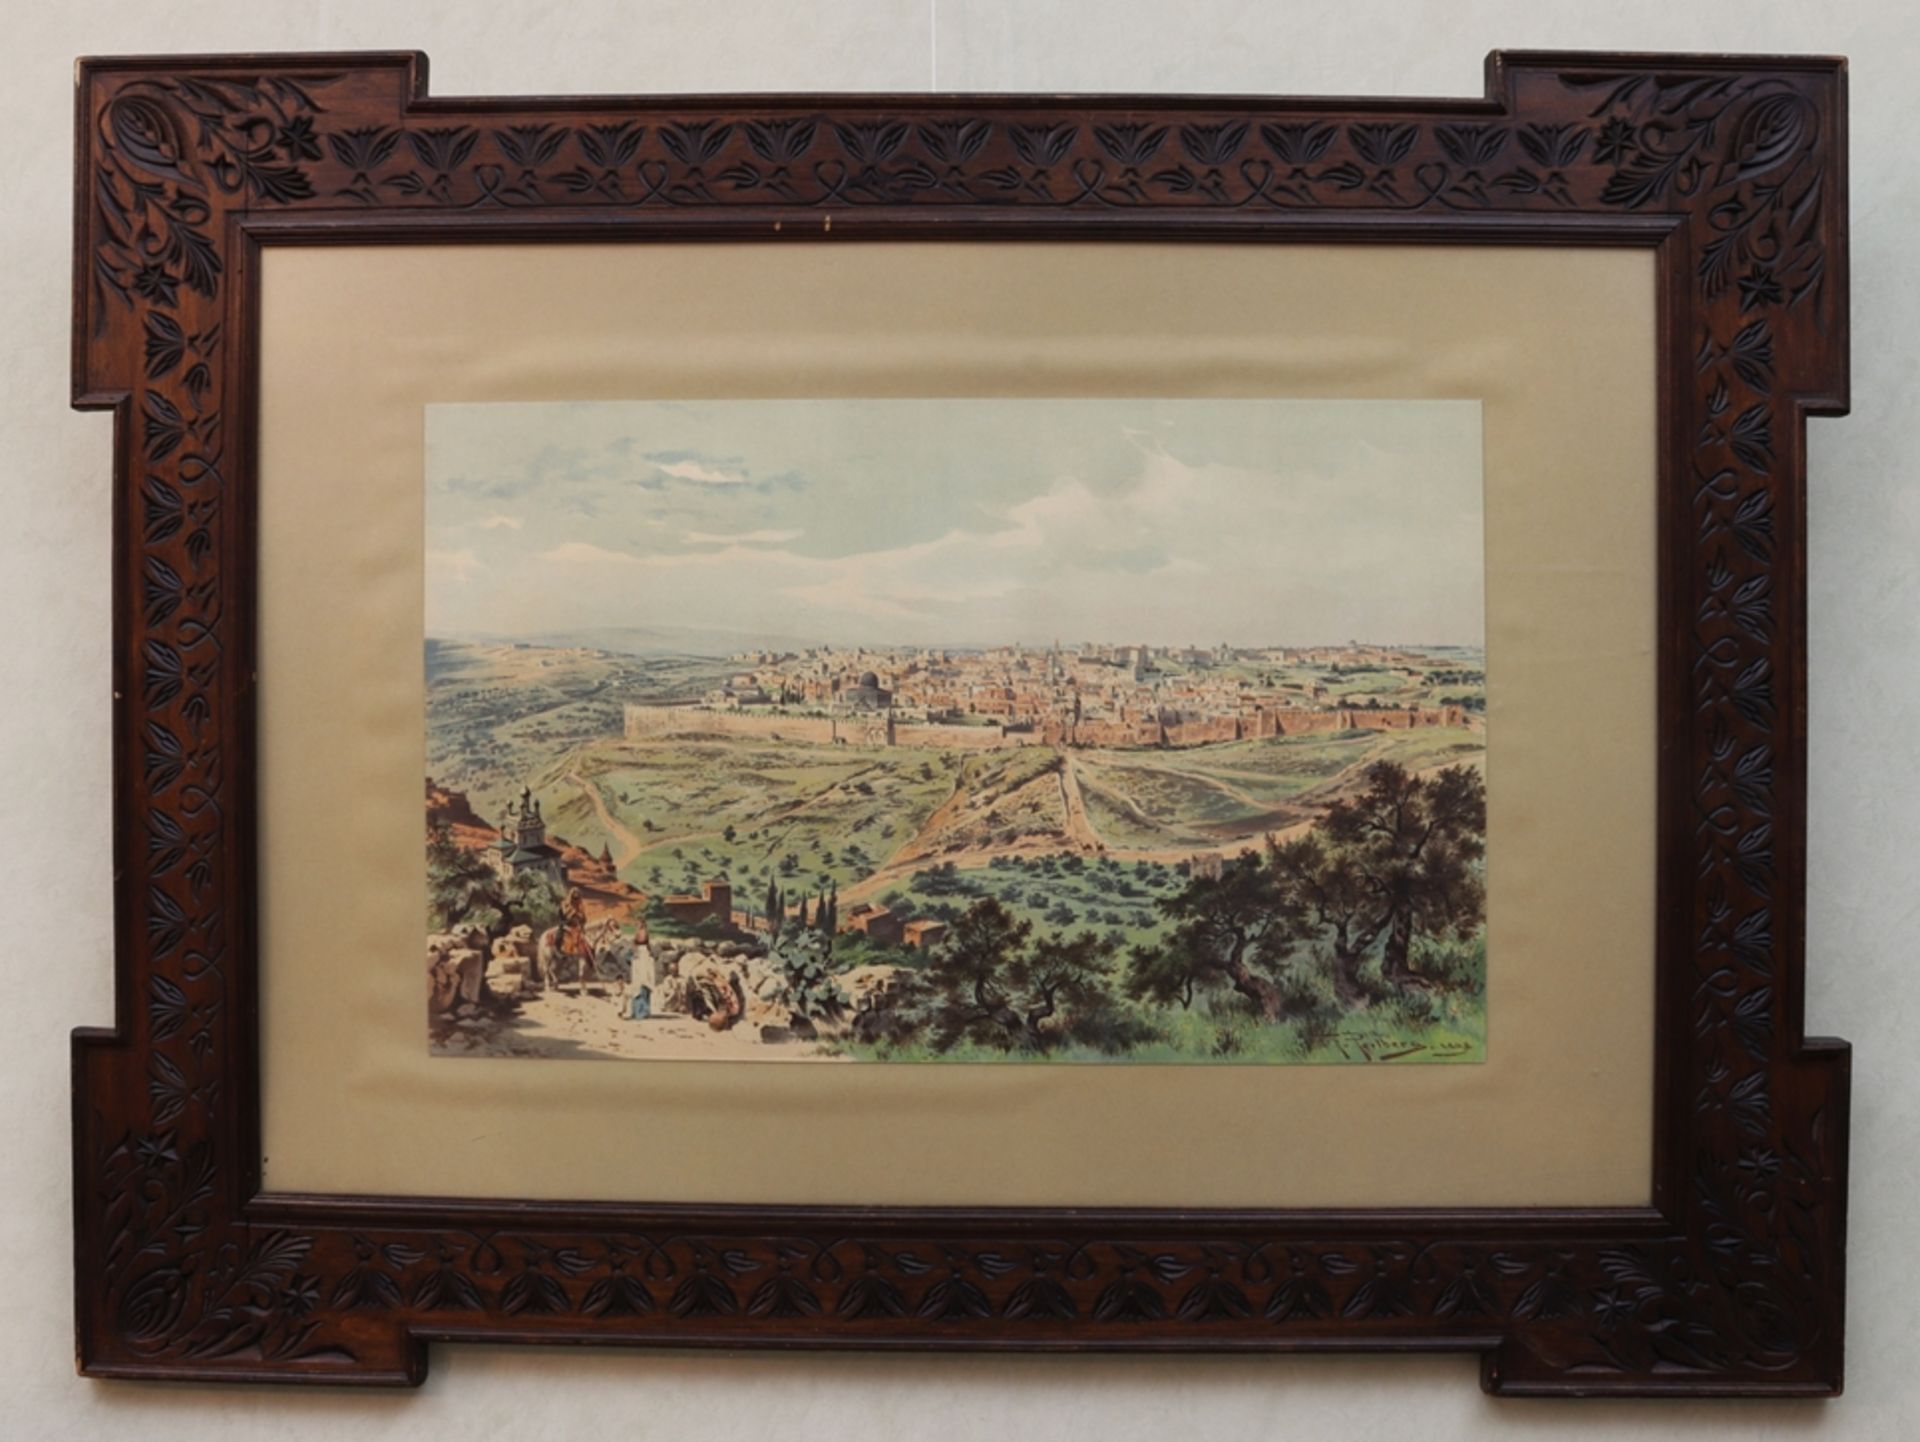 Farblithographie Ansicht einer arabischen Stadt, sign. F. Perlberg, 1898